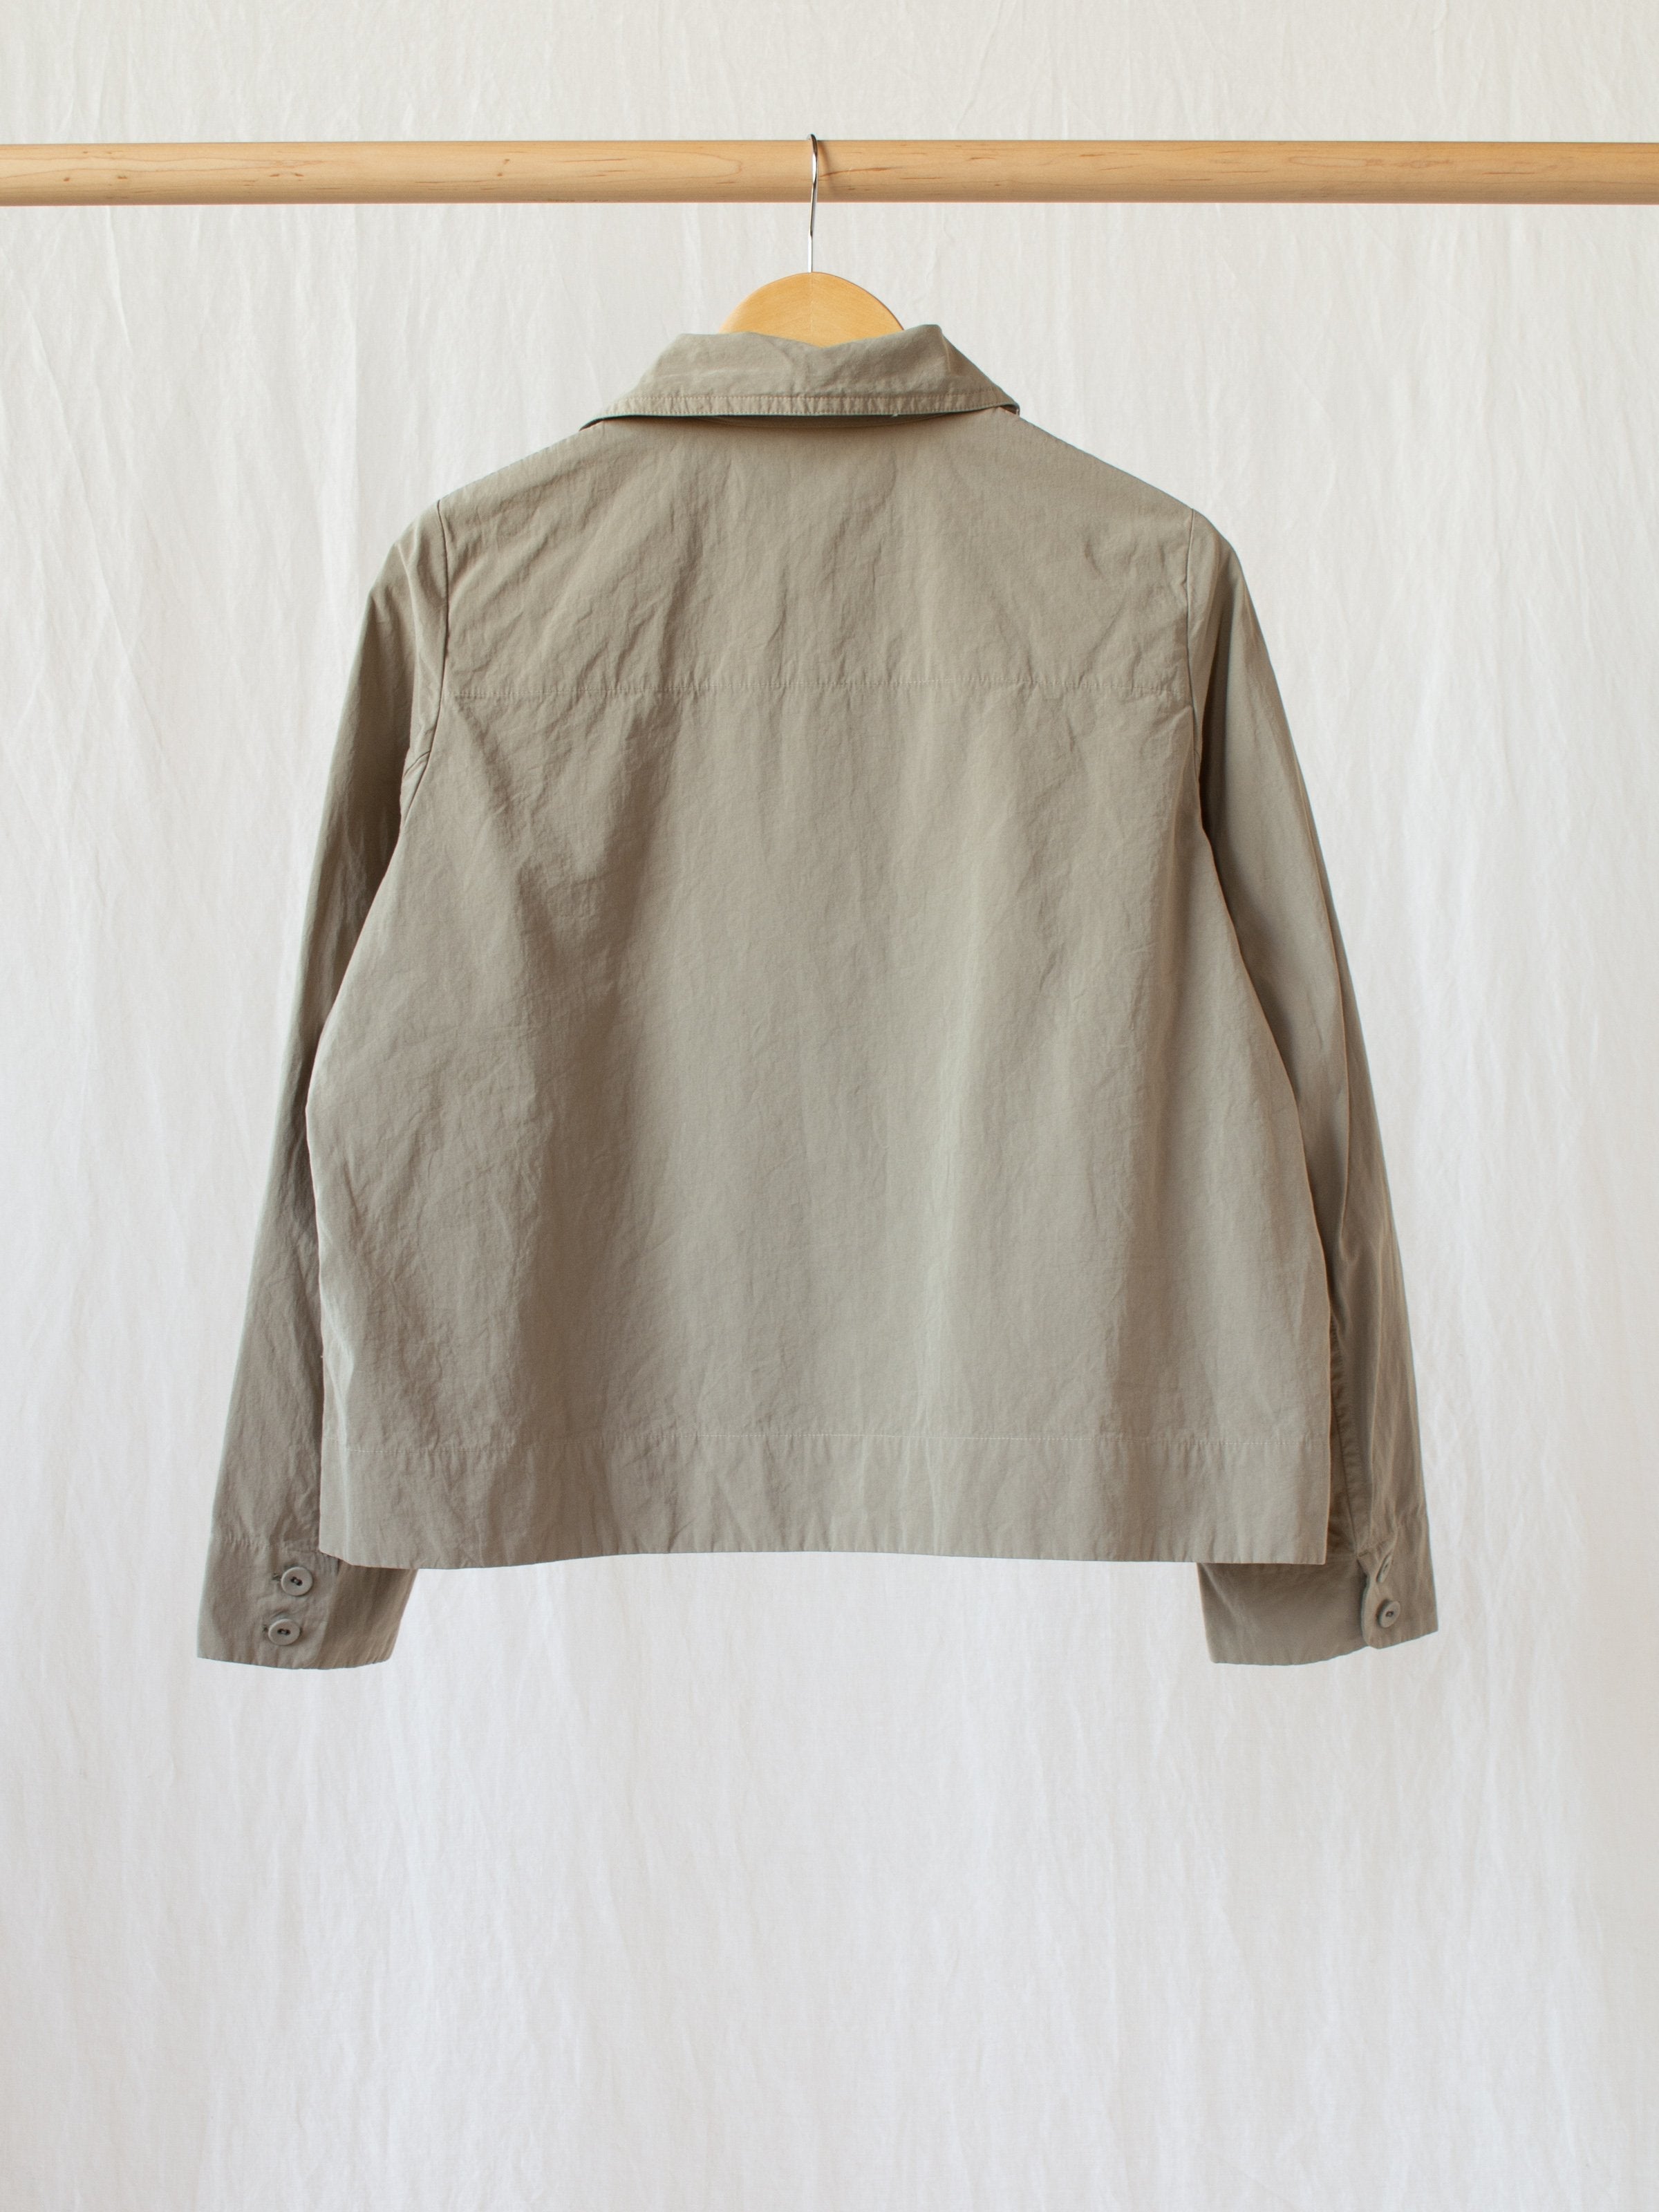 Namu Shop - Veritecoeur Typewriter Cotton Shirt Jacket